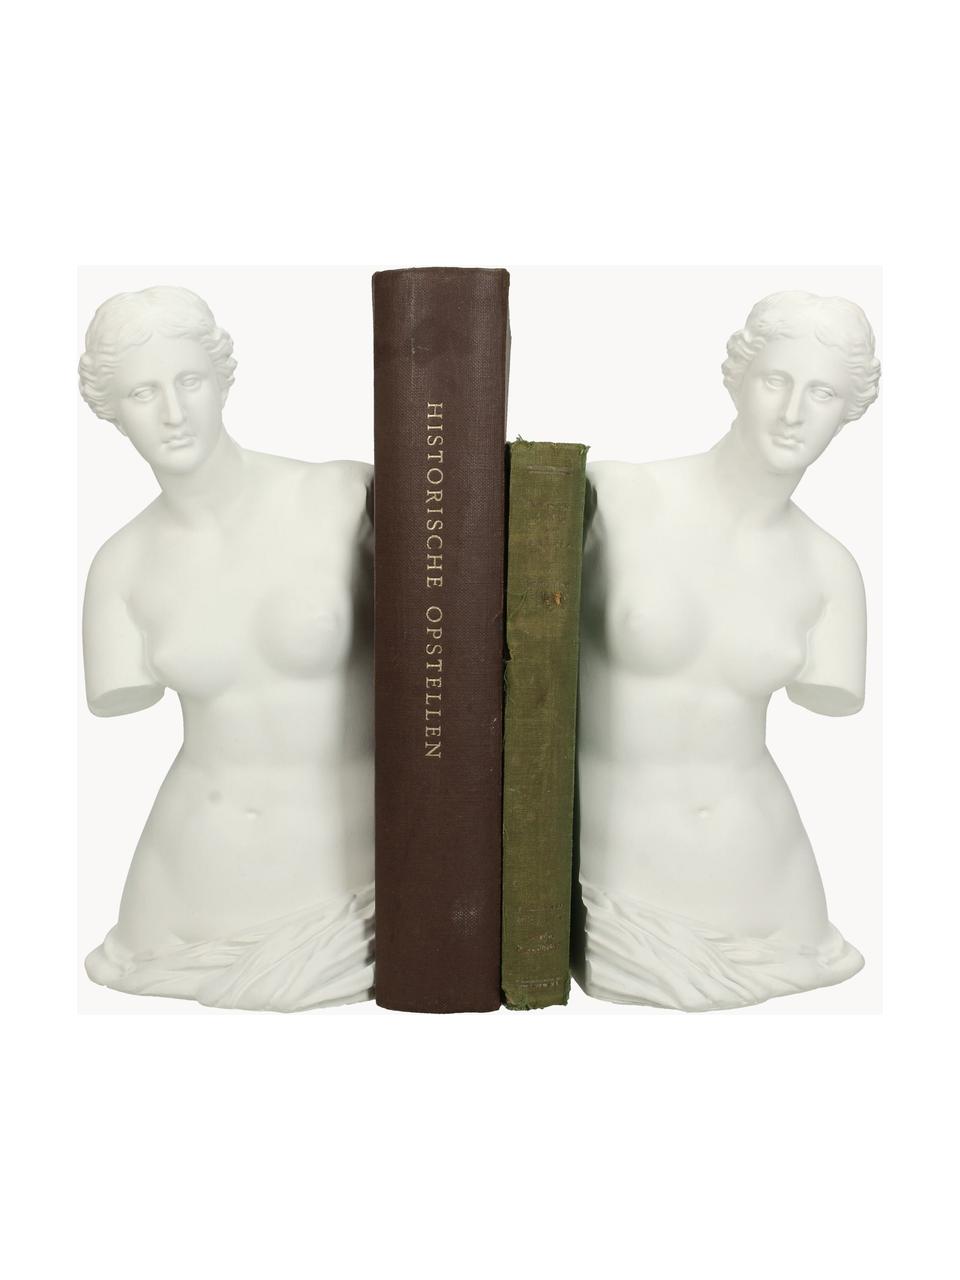 Handbemalte Buchstützen Venus, 2 Stück, Kunststoff, Off White, B 12 x H 26 cm